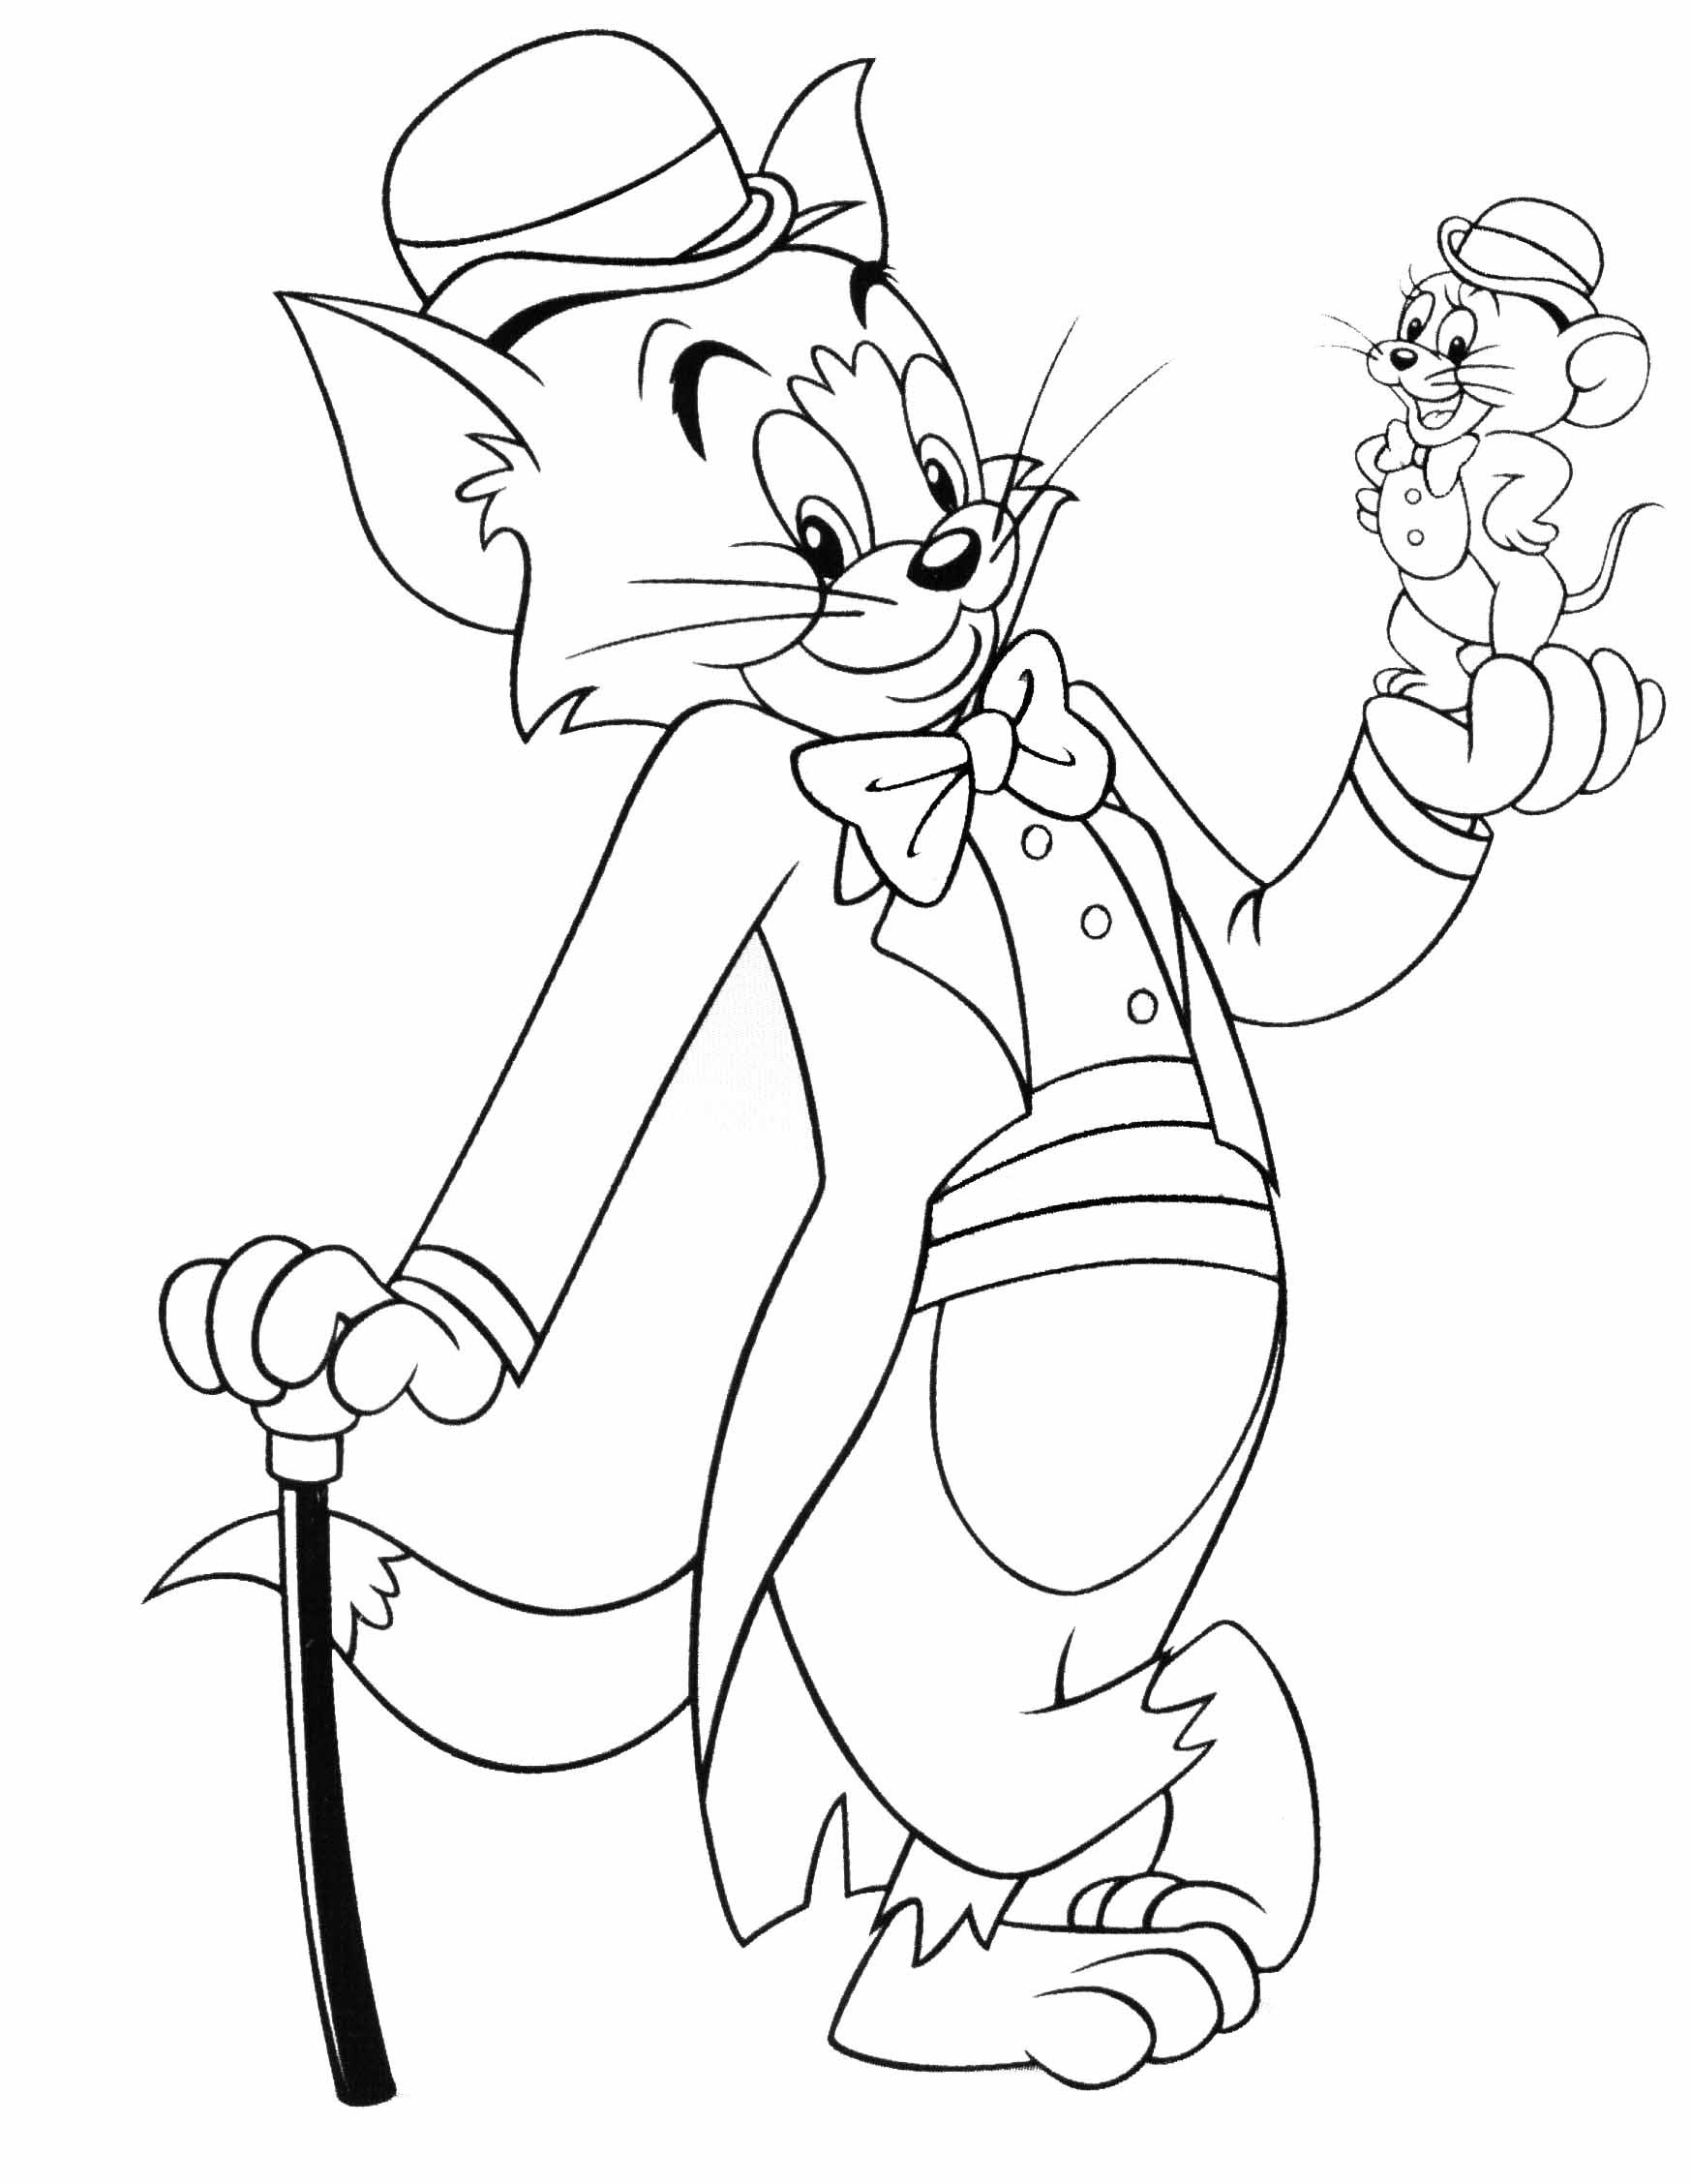 Ausmalbilder Tom Und Jerry
 Malvorlagen fur kinder Ausmalbilder Tom Und Jerry